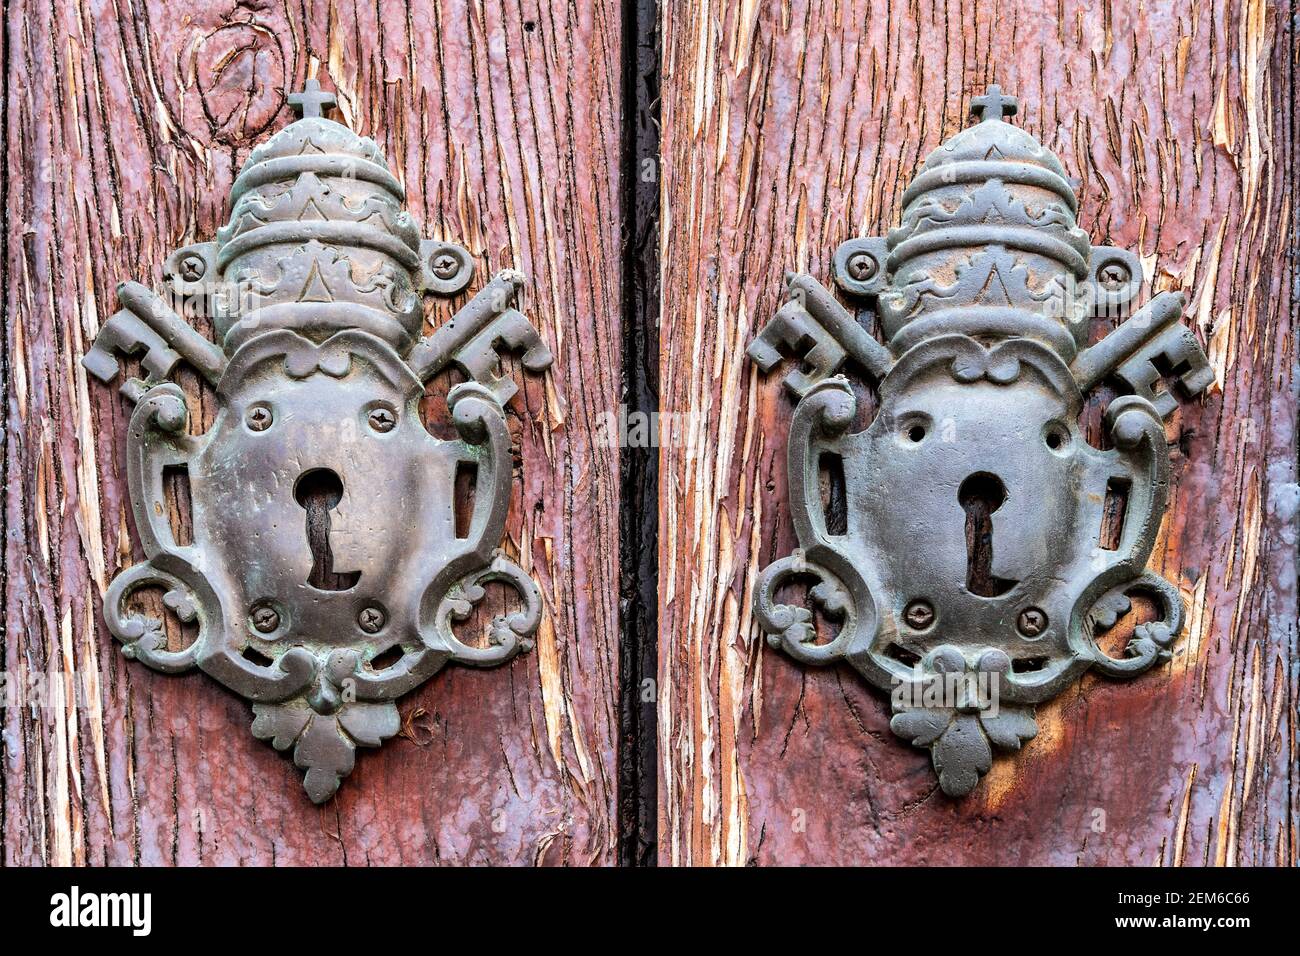 Keyholes in a colonial wooden door in Old Havana, Cuba Stock Photo